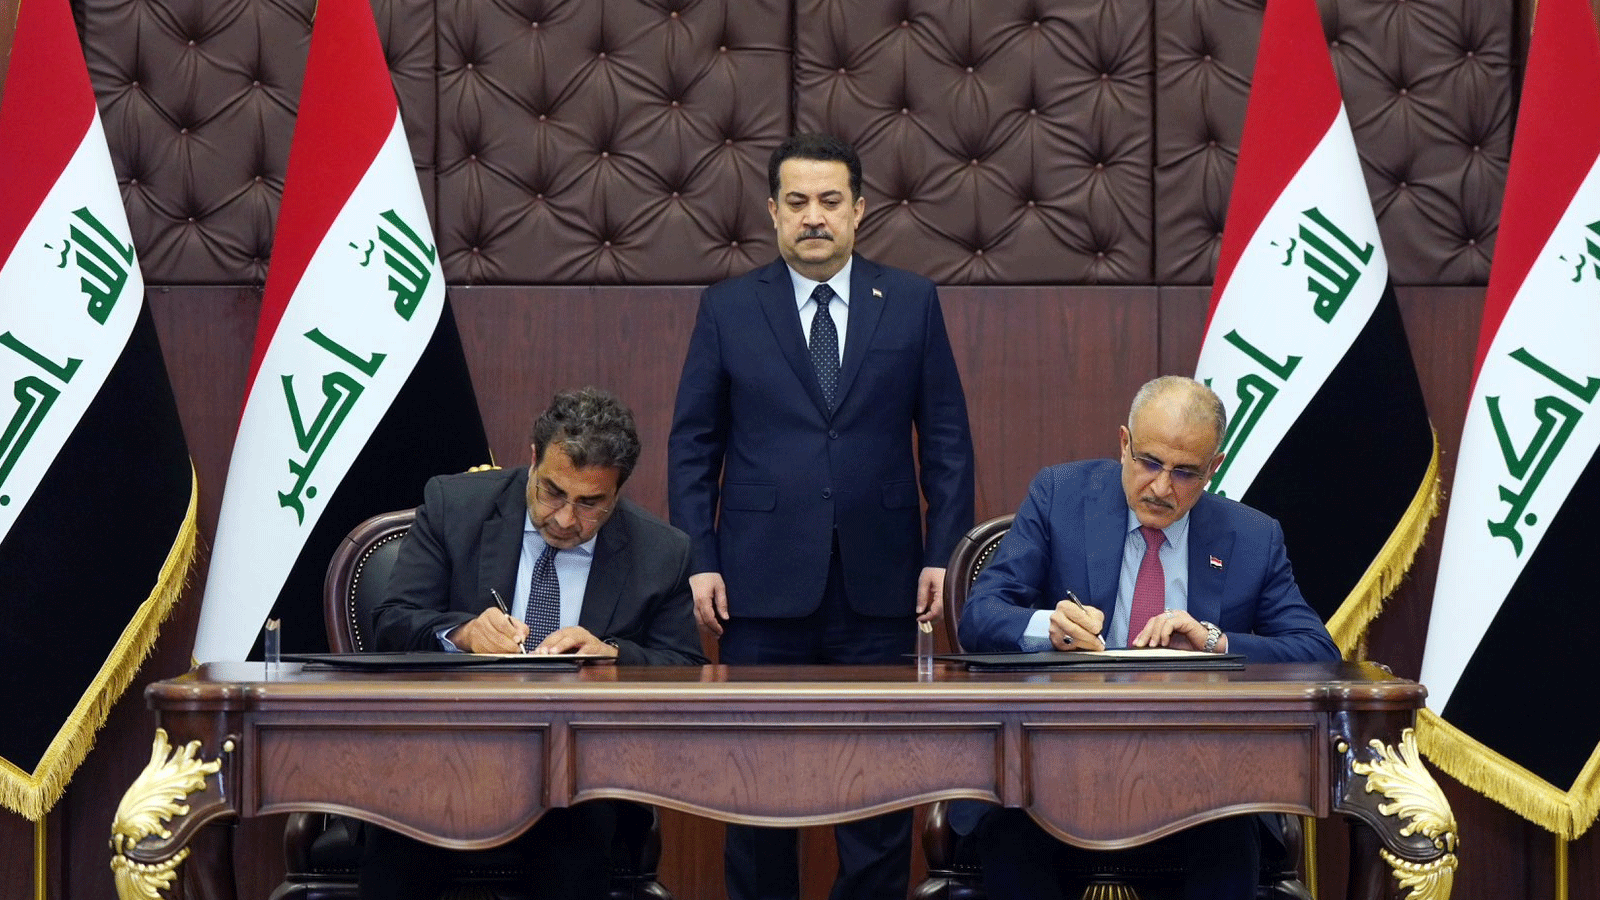 رئيس مجلس الوزراء محمد شياع السوداني يرعى توقيع اتفاقية رائدة مع مؤسسة التمويل الدولية/IFC، لتطوير وتأهيل مطار بغداد الدولي(حساب السوداني على منصة x)